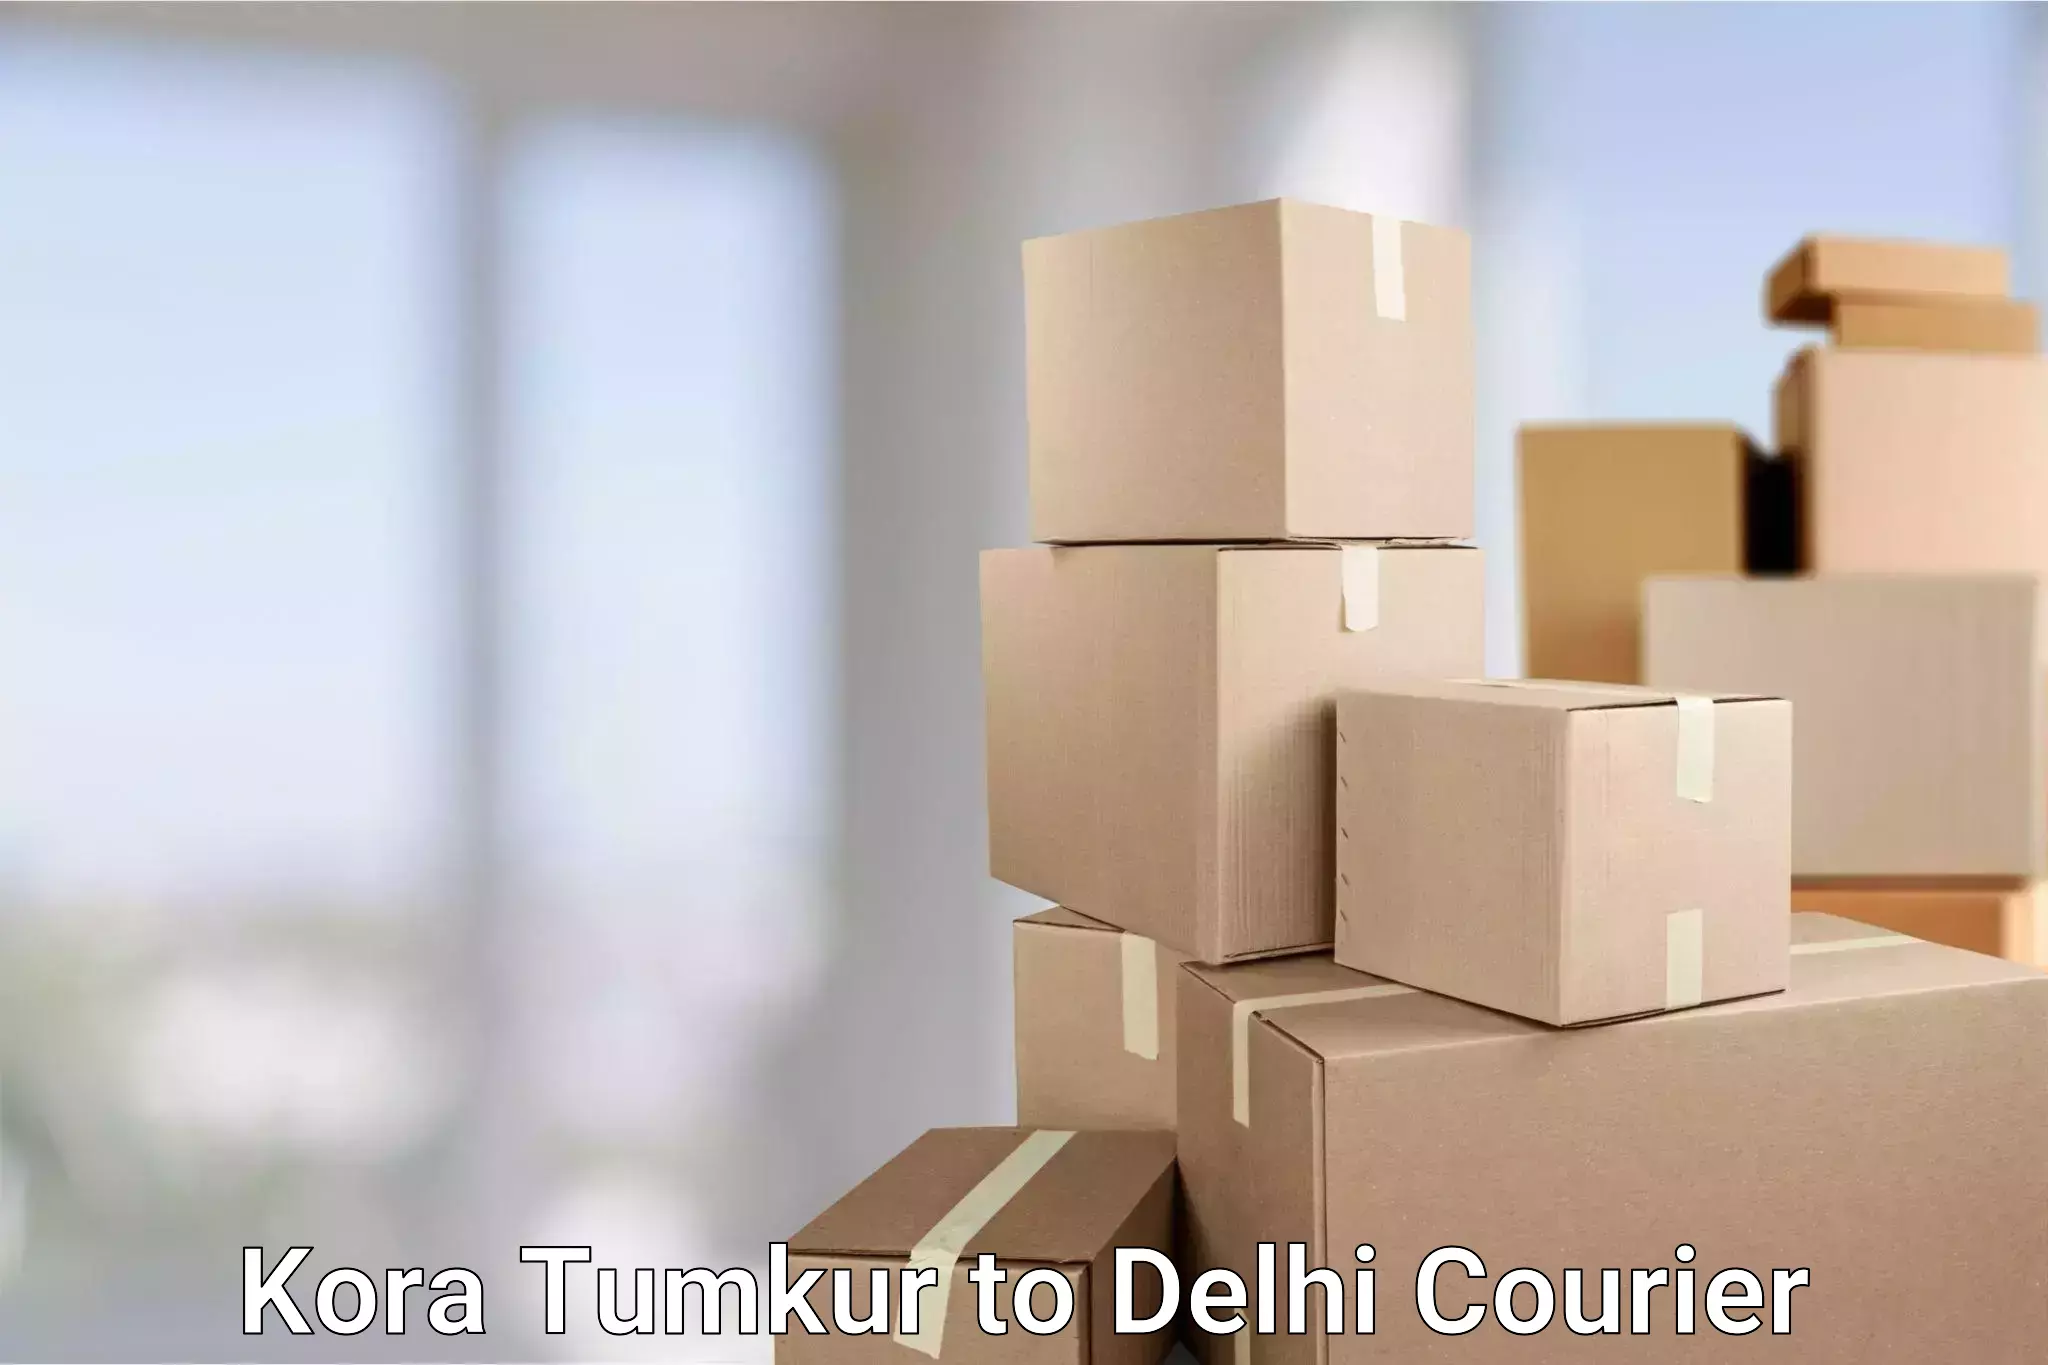 International logistics solutions Kora Tumkur to Sansad Marg